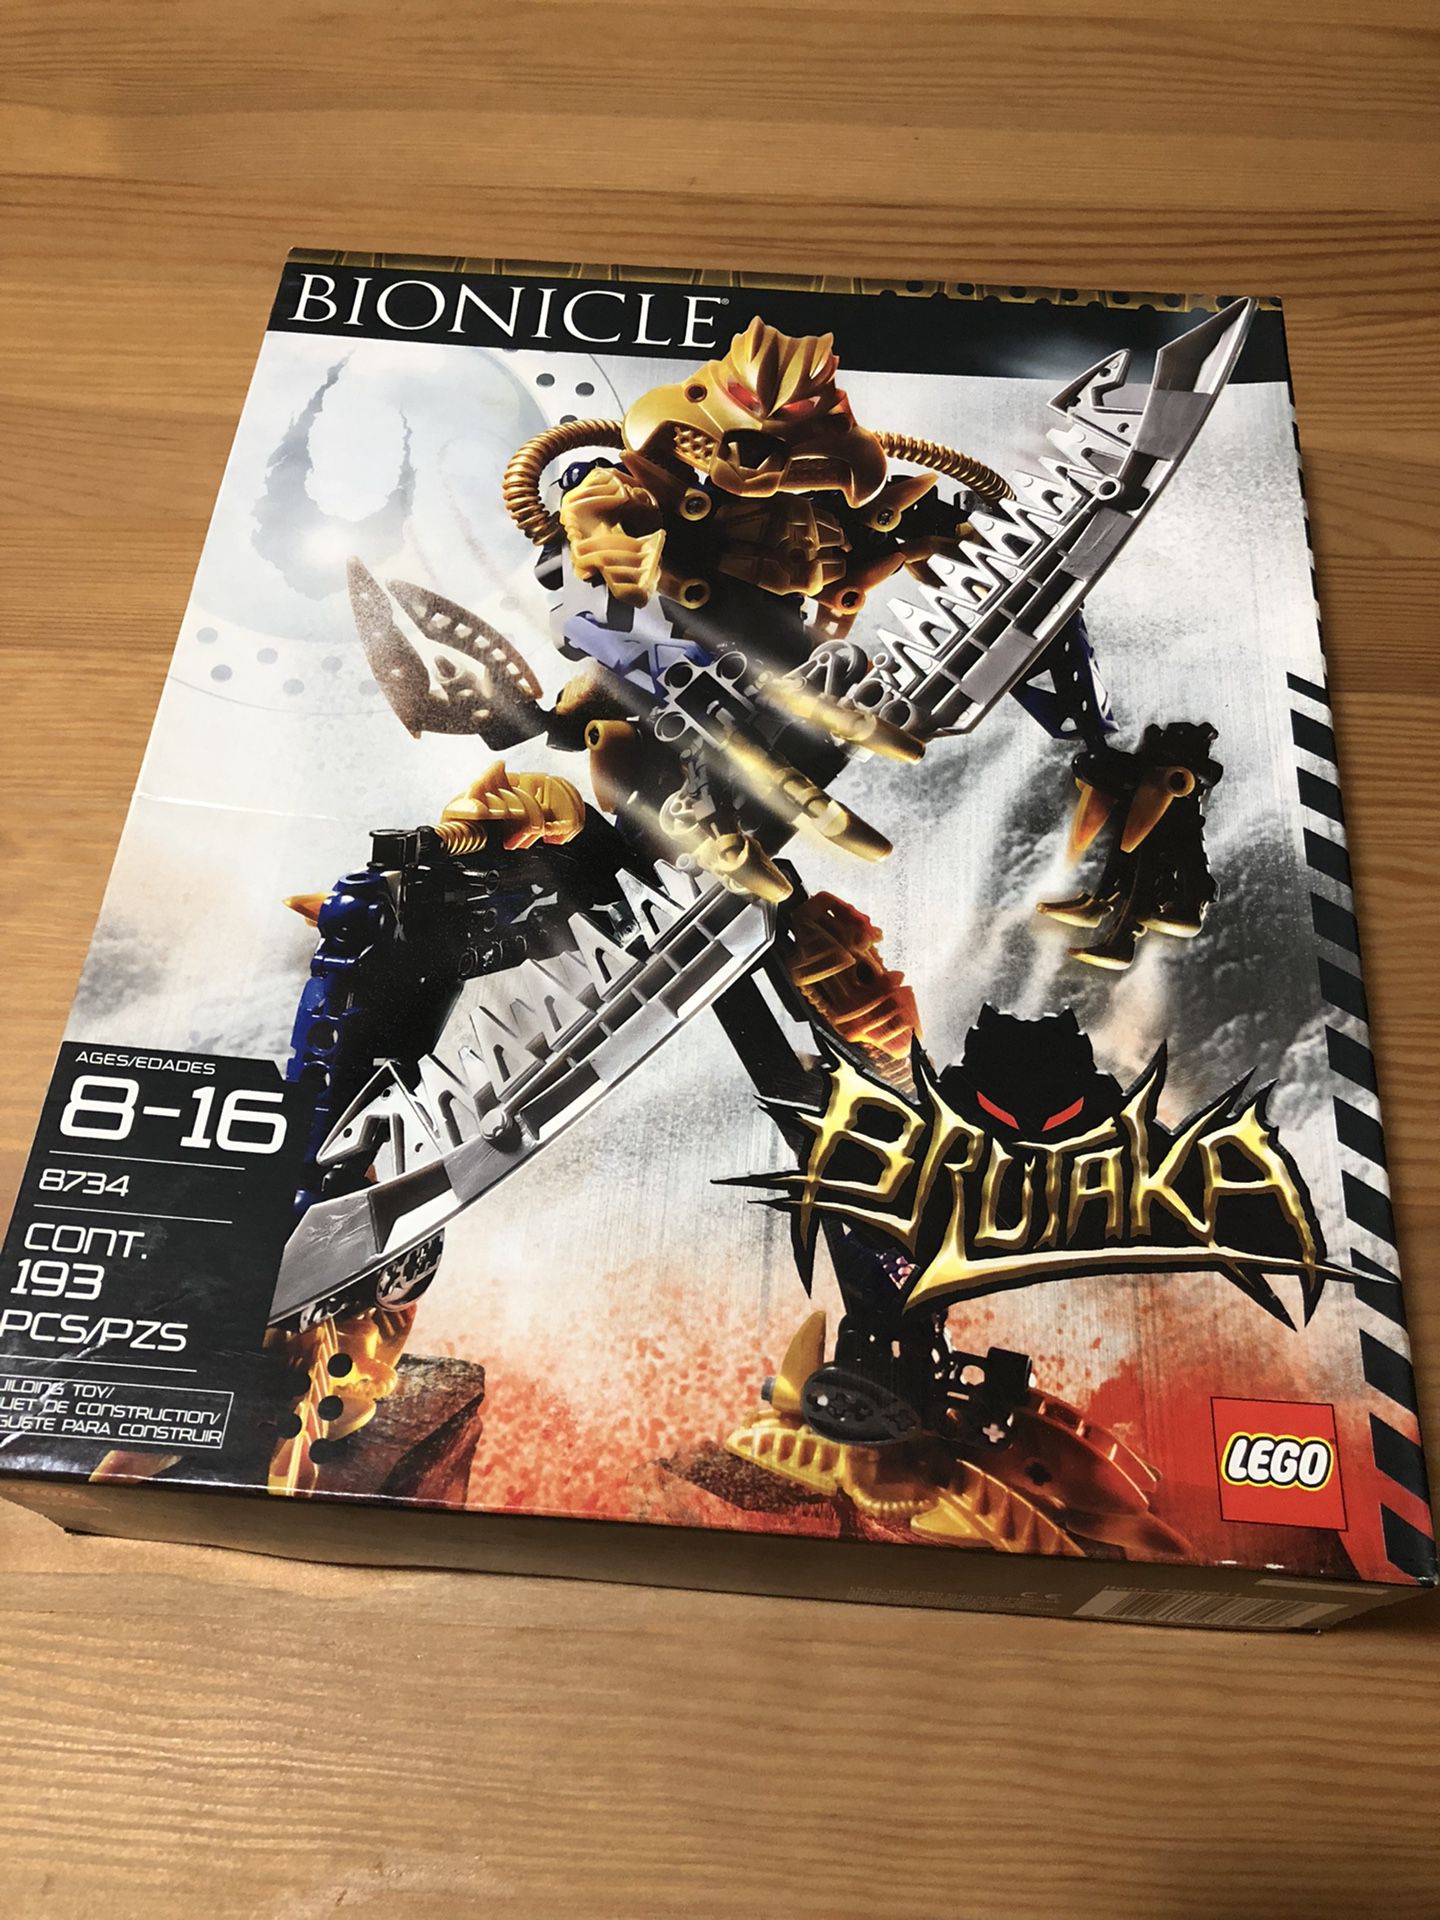 Lego 8734 Bionicle Titans Brutaka 